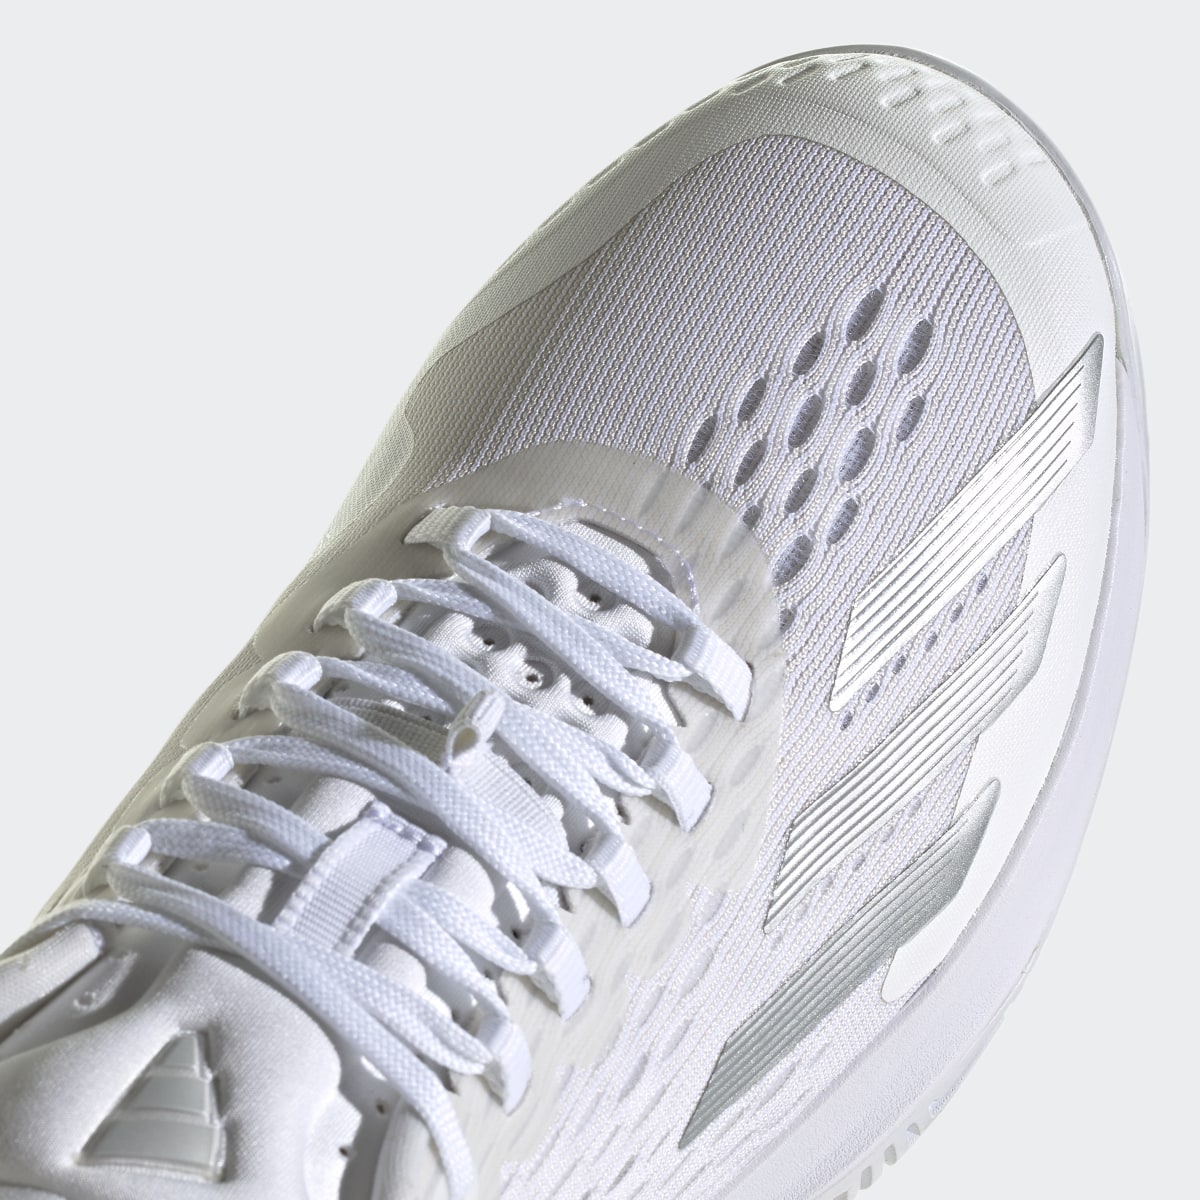 Adidas adizero Cybersonic Tennis Shoes. 12